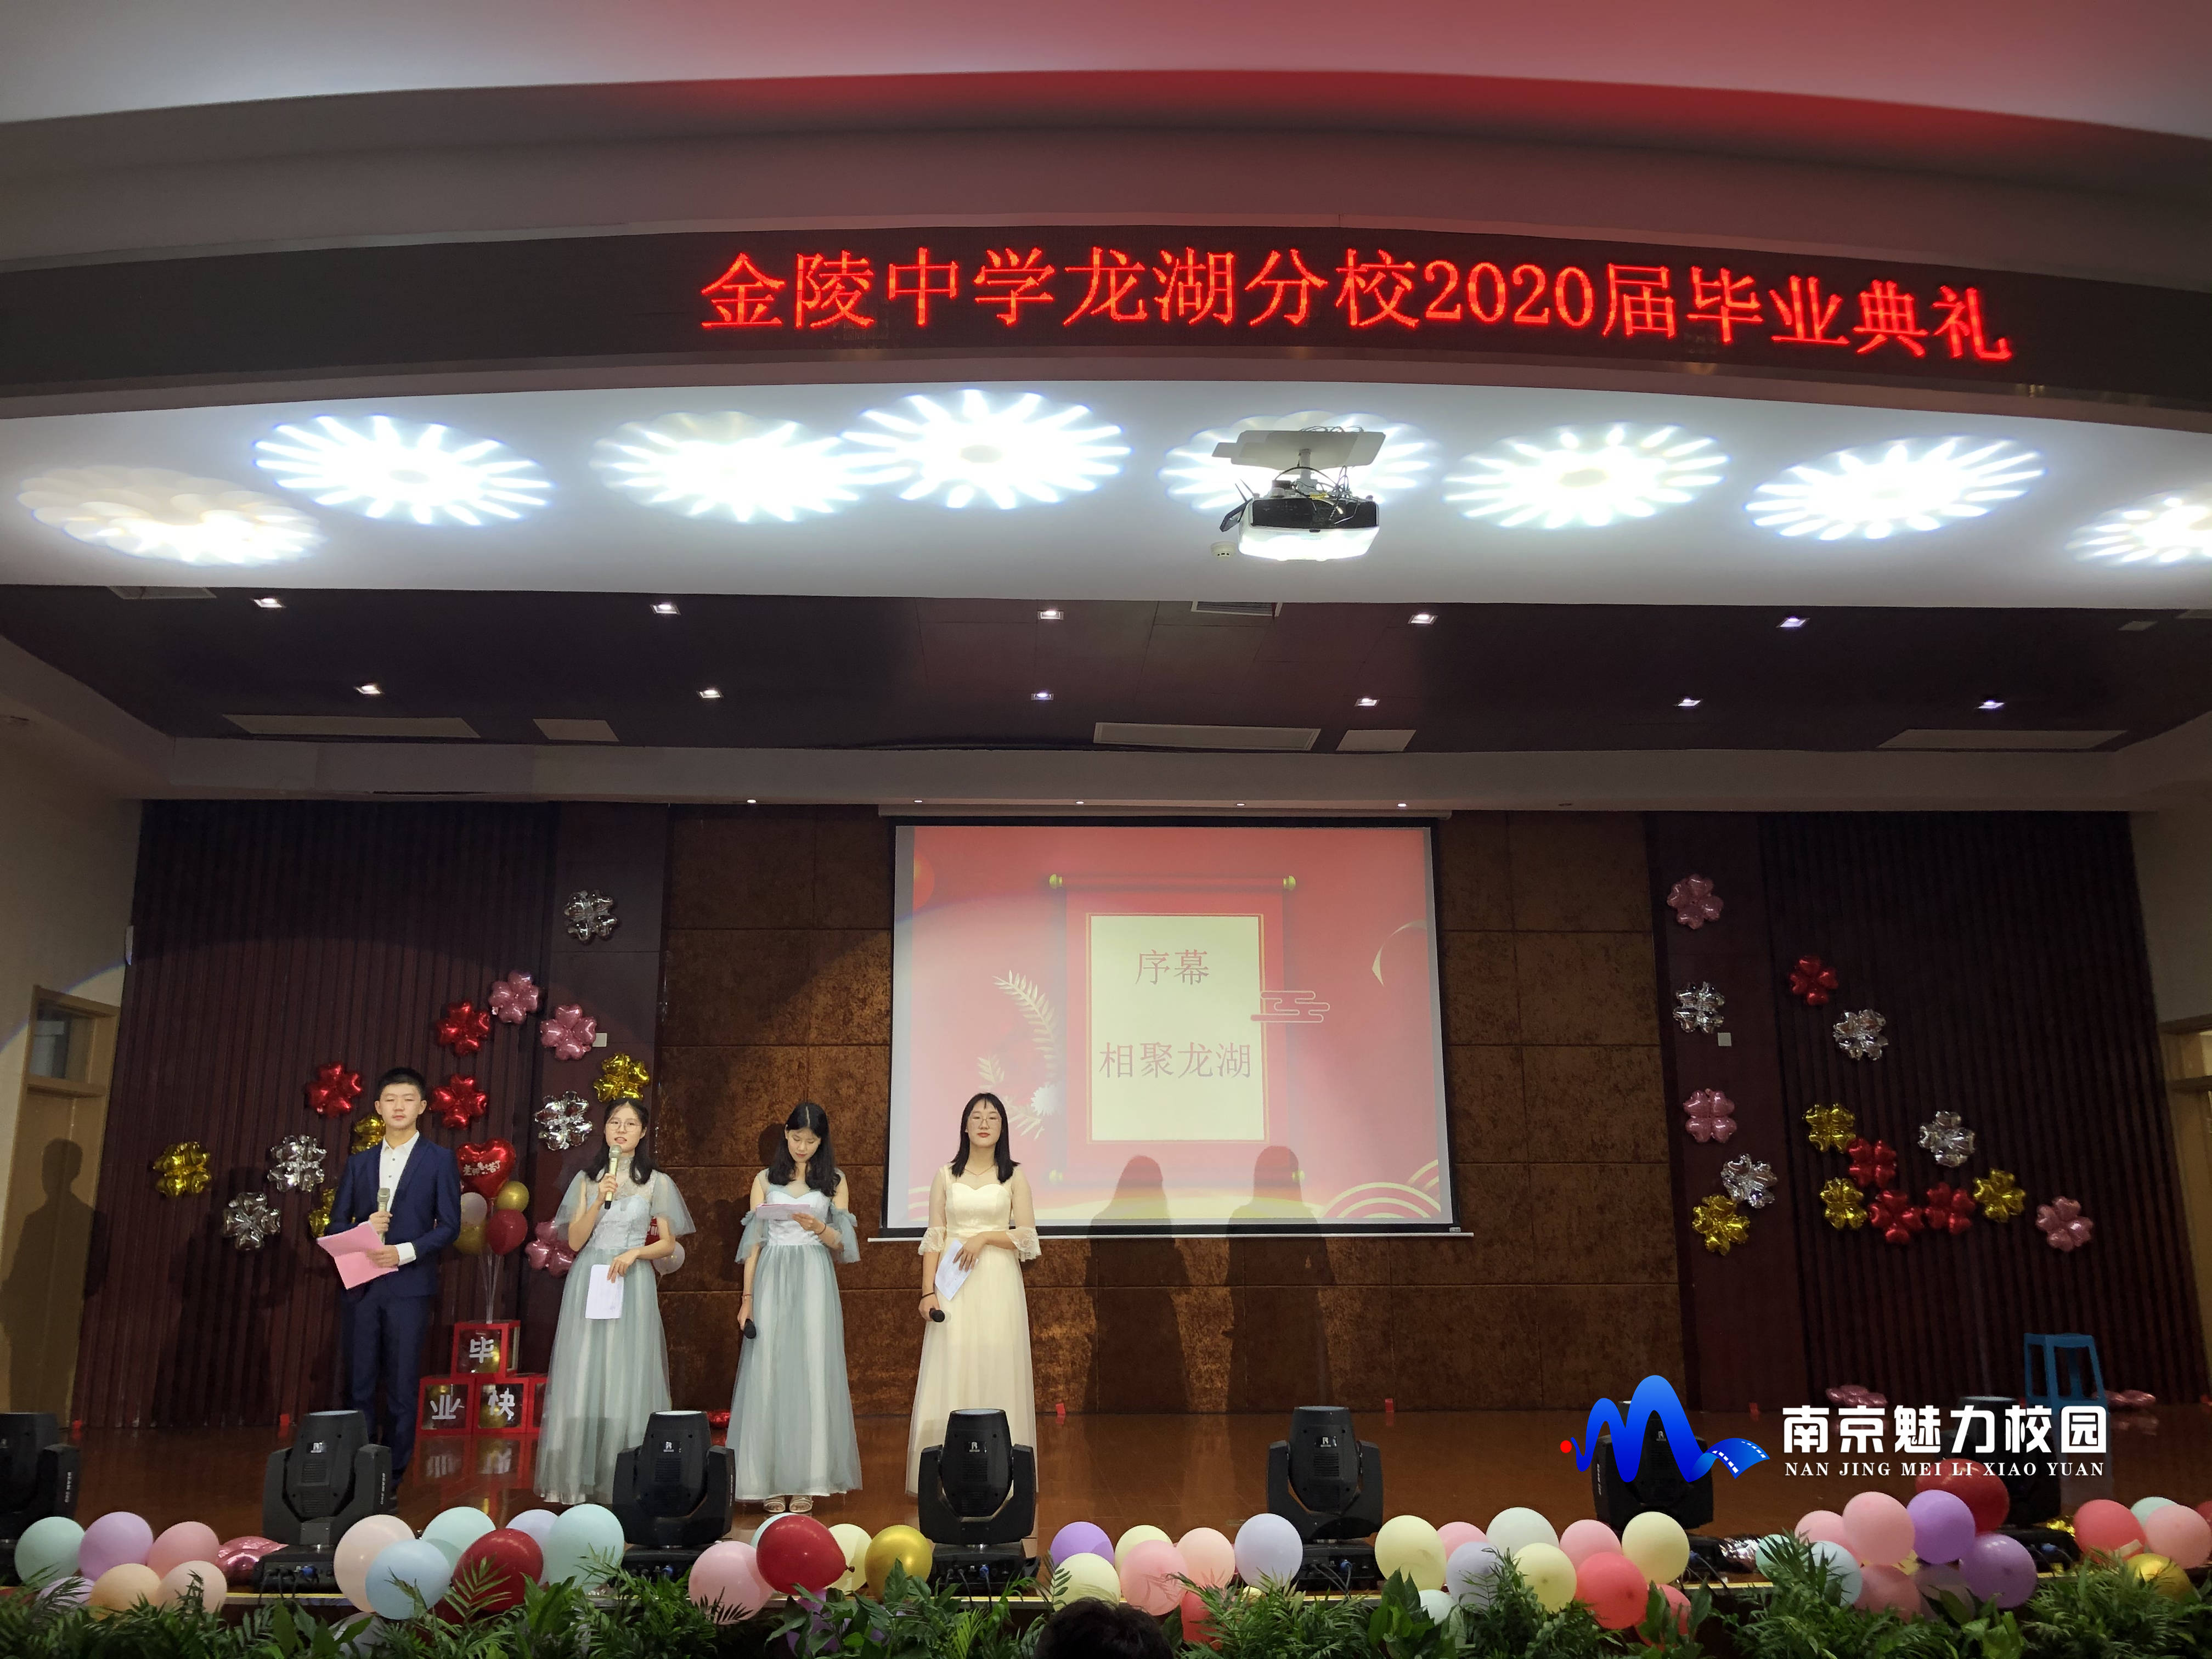 原创动态丨南京市金陵中学龙湖分校:2020届毕业典礼